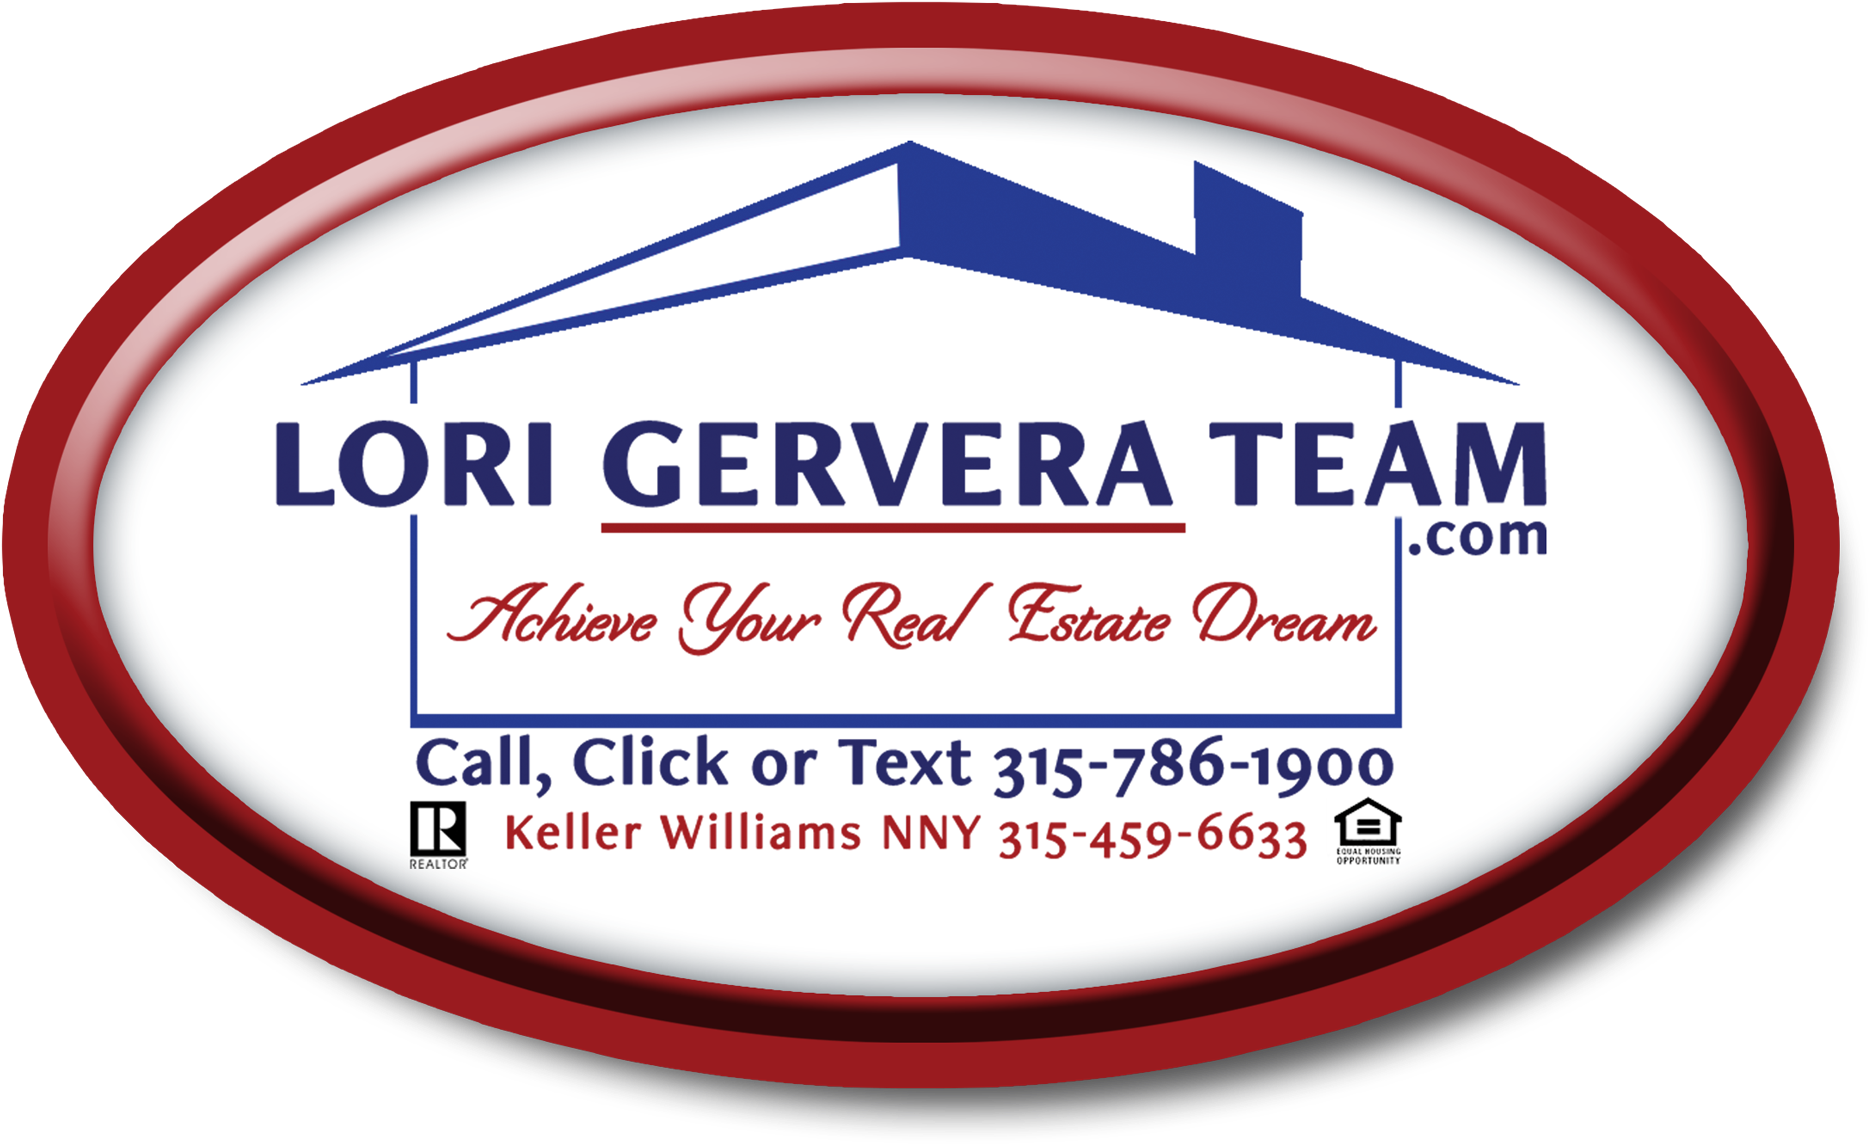 Lori Gervera Team - National Association Of Realtors Clipart (2020x1200), Png Download